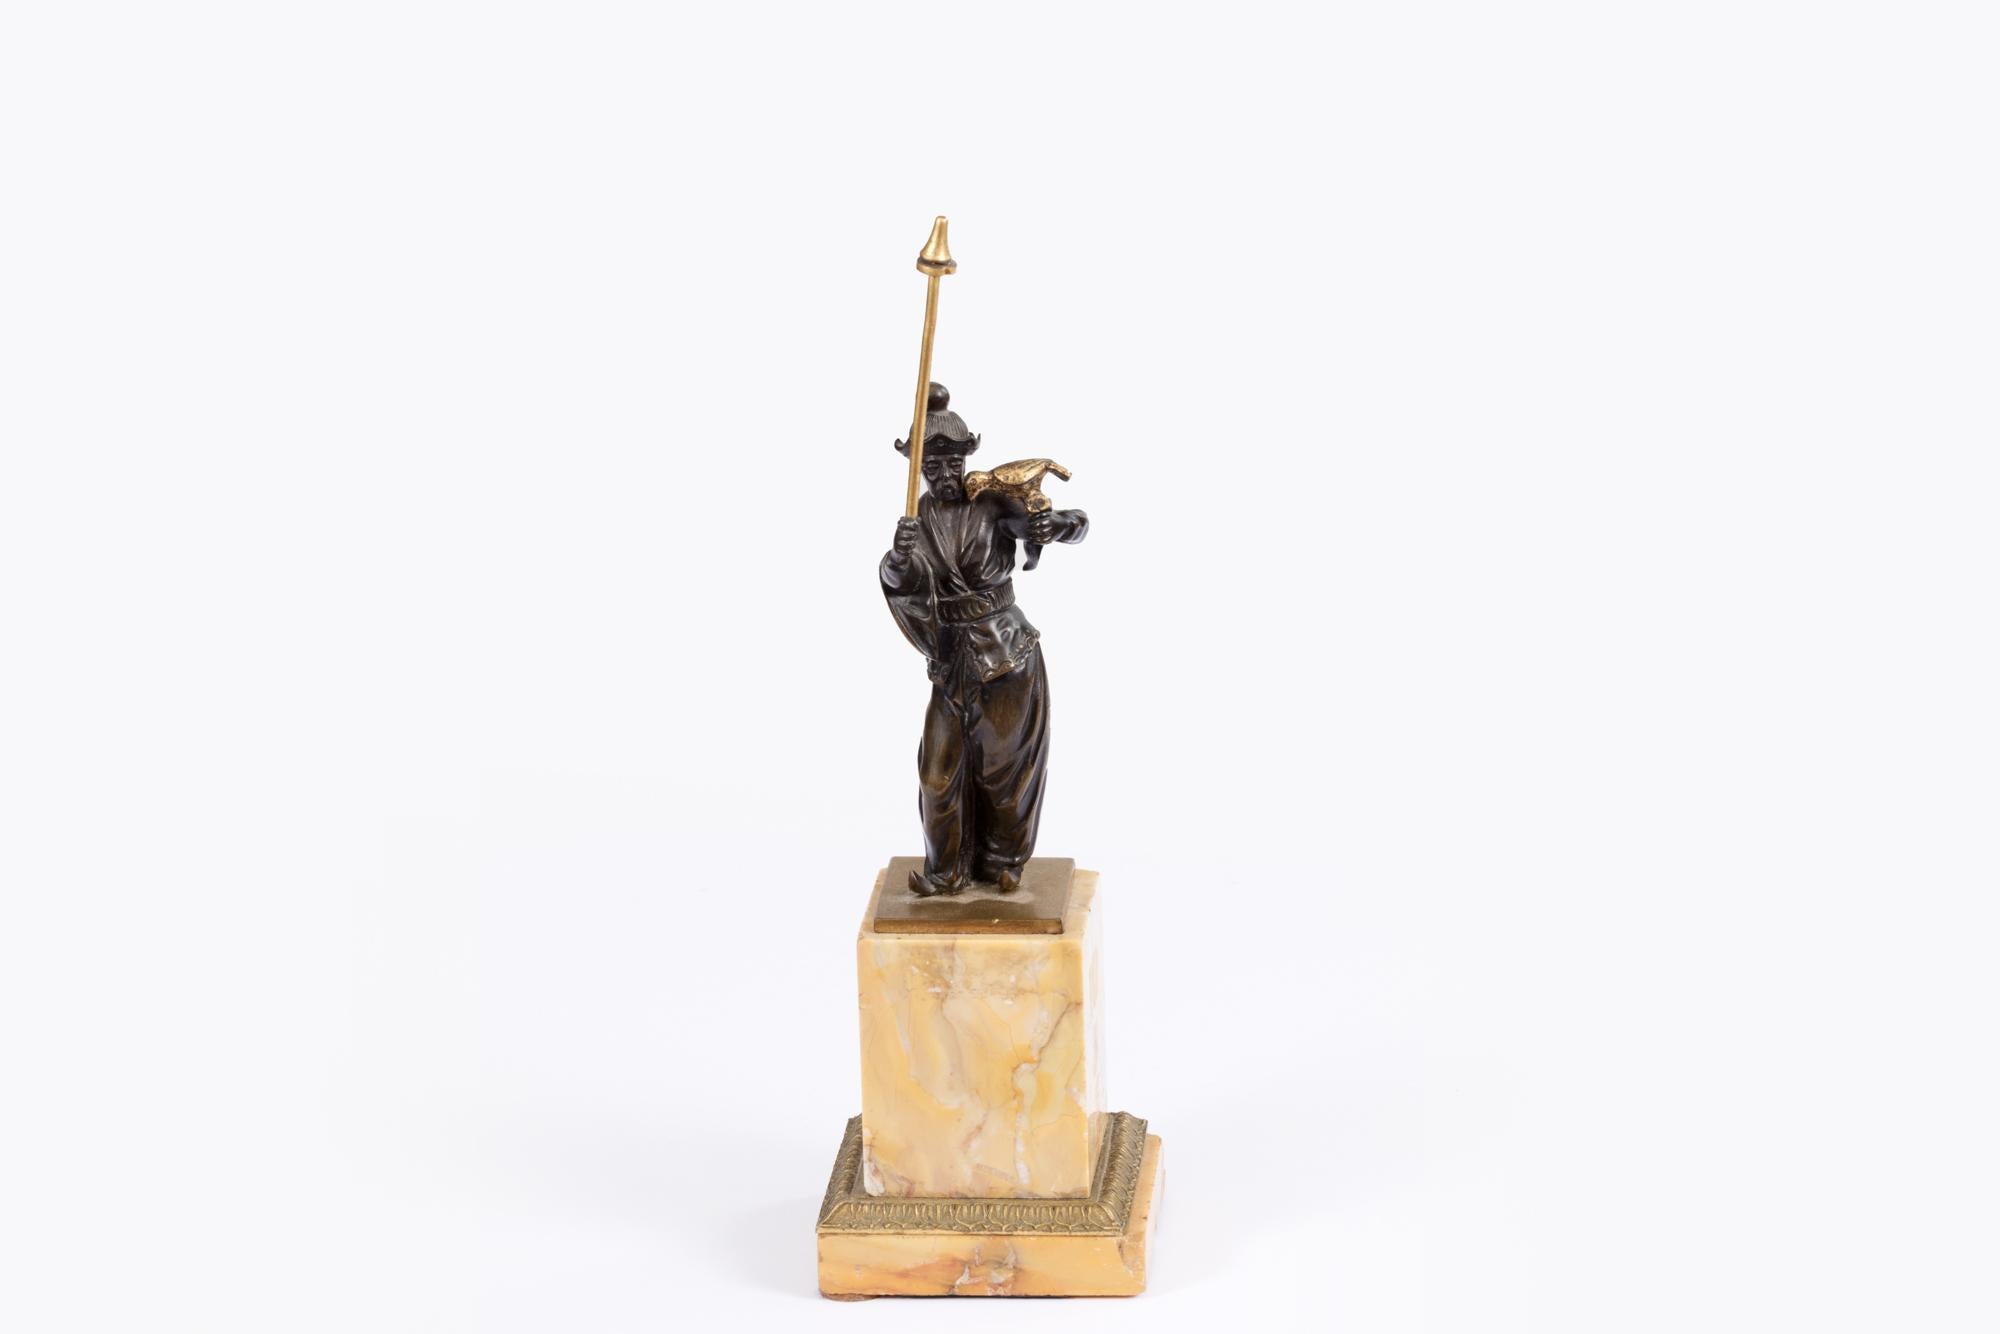 Bronzegussfigur eines orientalischen Jägers aus dem 19. Jahrhundert mit vergoldetem Speer und Falke. Die Figur steht stolz auf einem quadratischen und gestuften Marmorsockel.